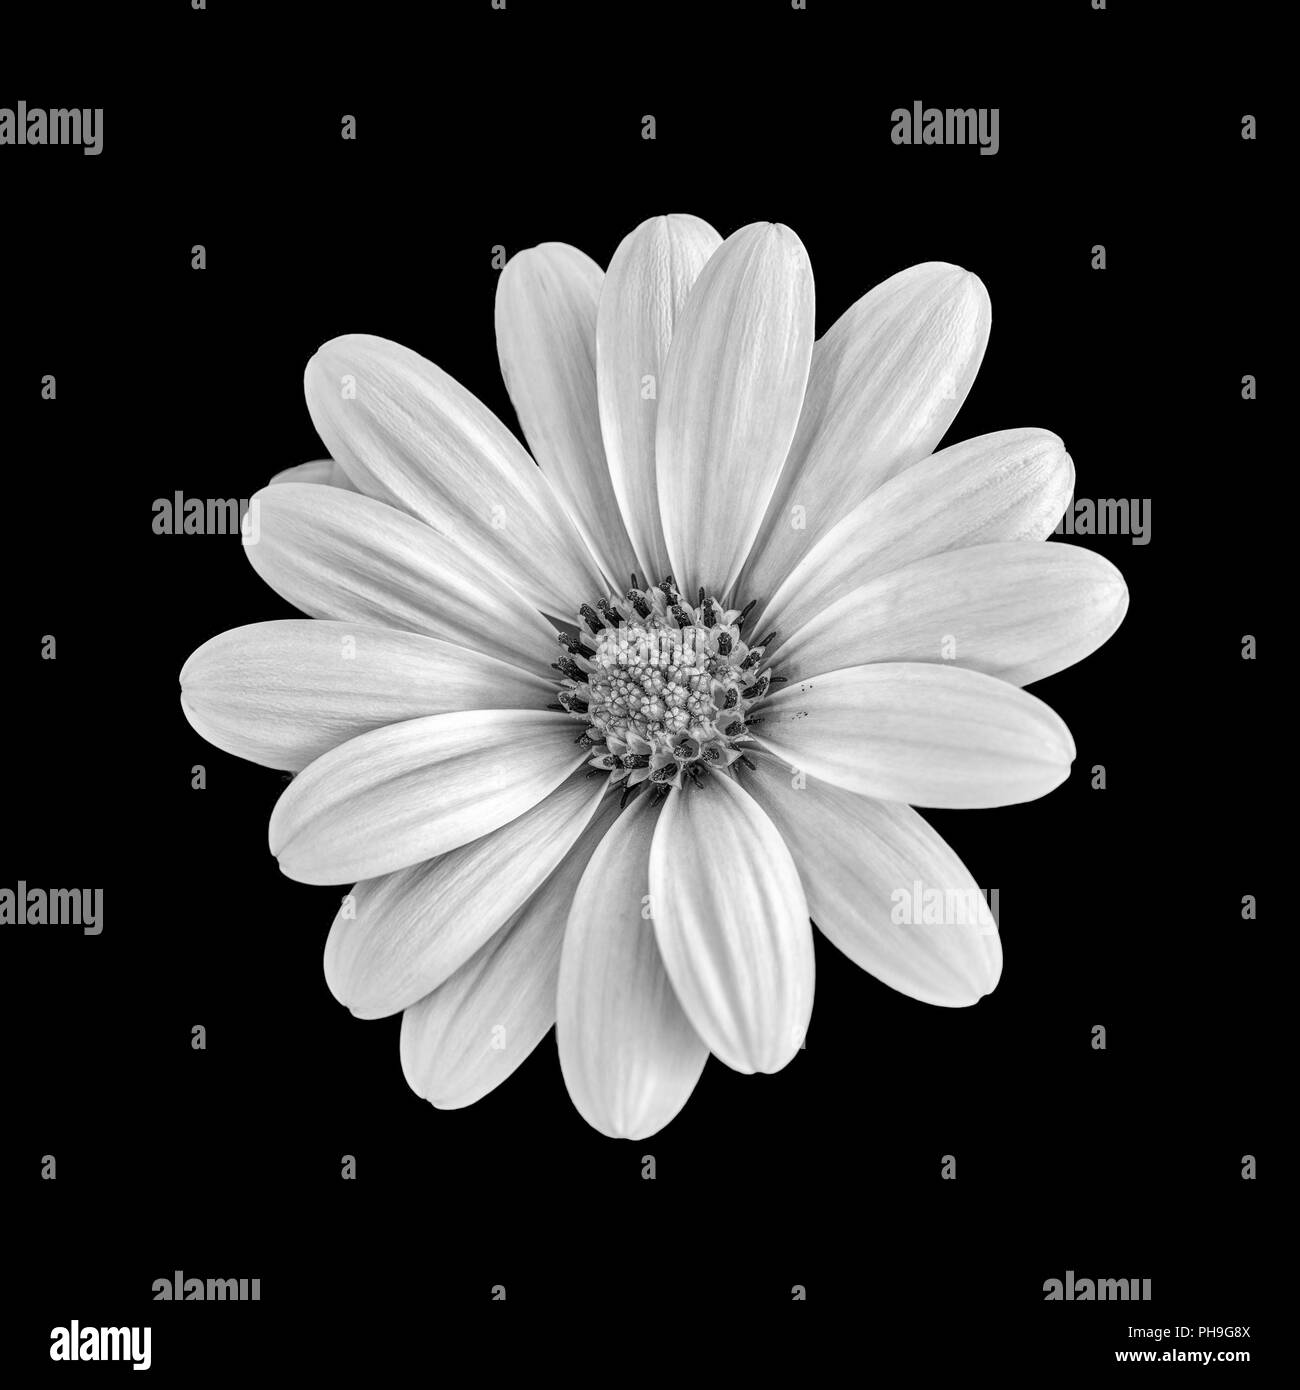 Fine art still life flower macro image monochrome d'un wide open blooming african cape daisy / marguerite fleurs sur fond noir Banque D'Images